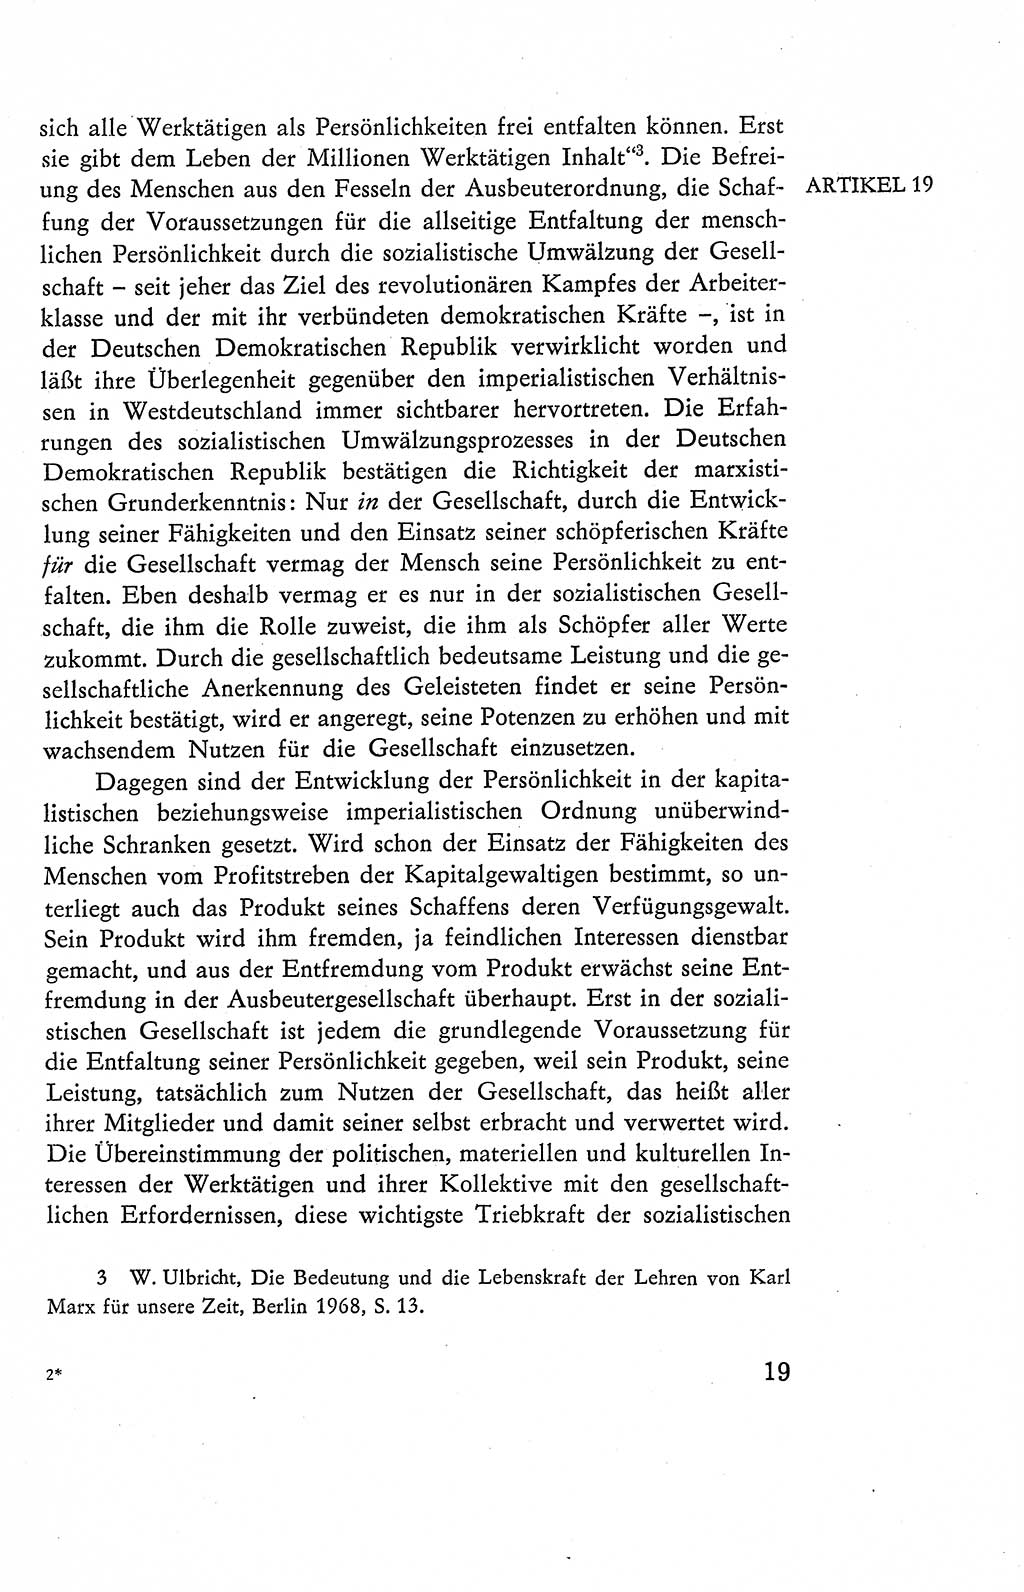 Verfassung der Deutschen Demokratischen Republik (DDR), Dokumente, Kommentar 1969, Band 2, Seite 19 (Verf. DDR Dok. Komm. 1969, Bd. 2, S. 19)